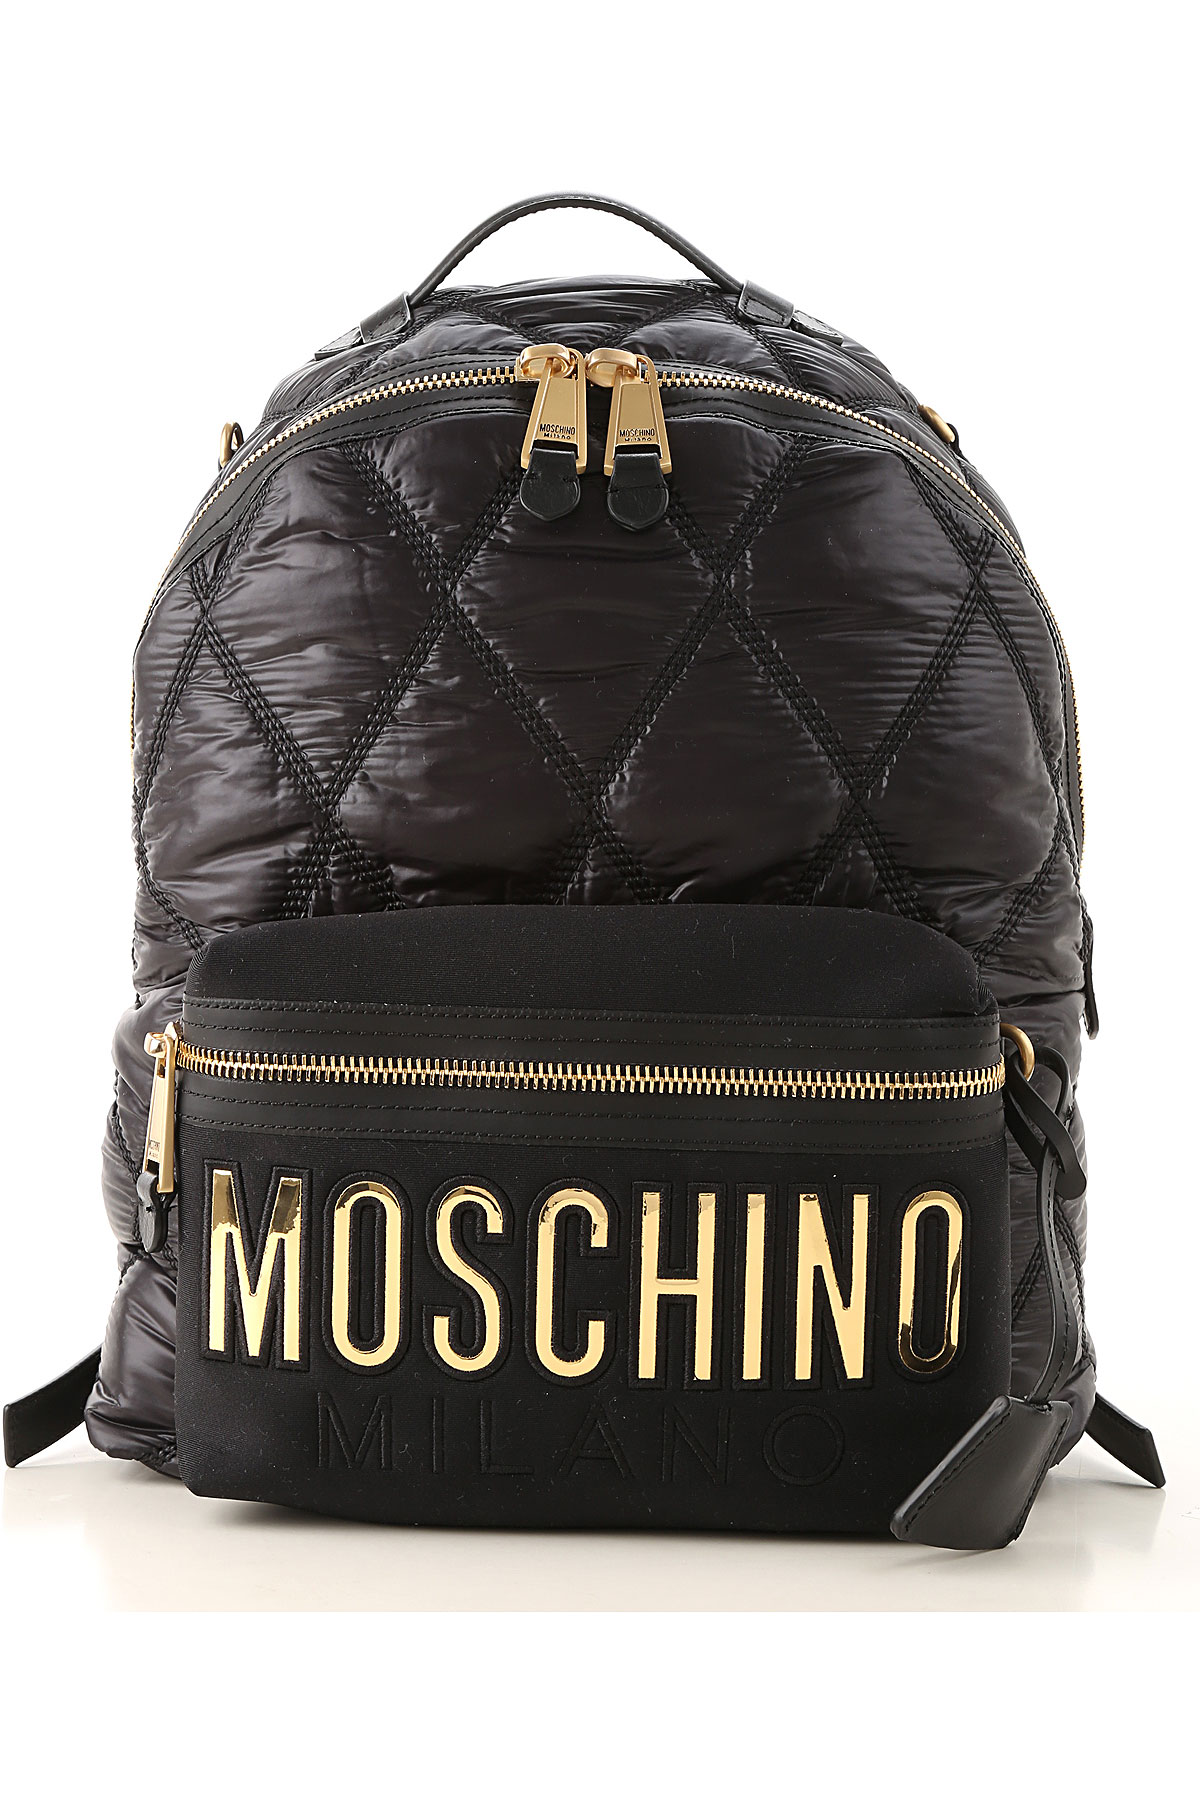 Handbags Moschino, Style code b760482071555